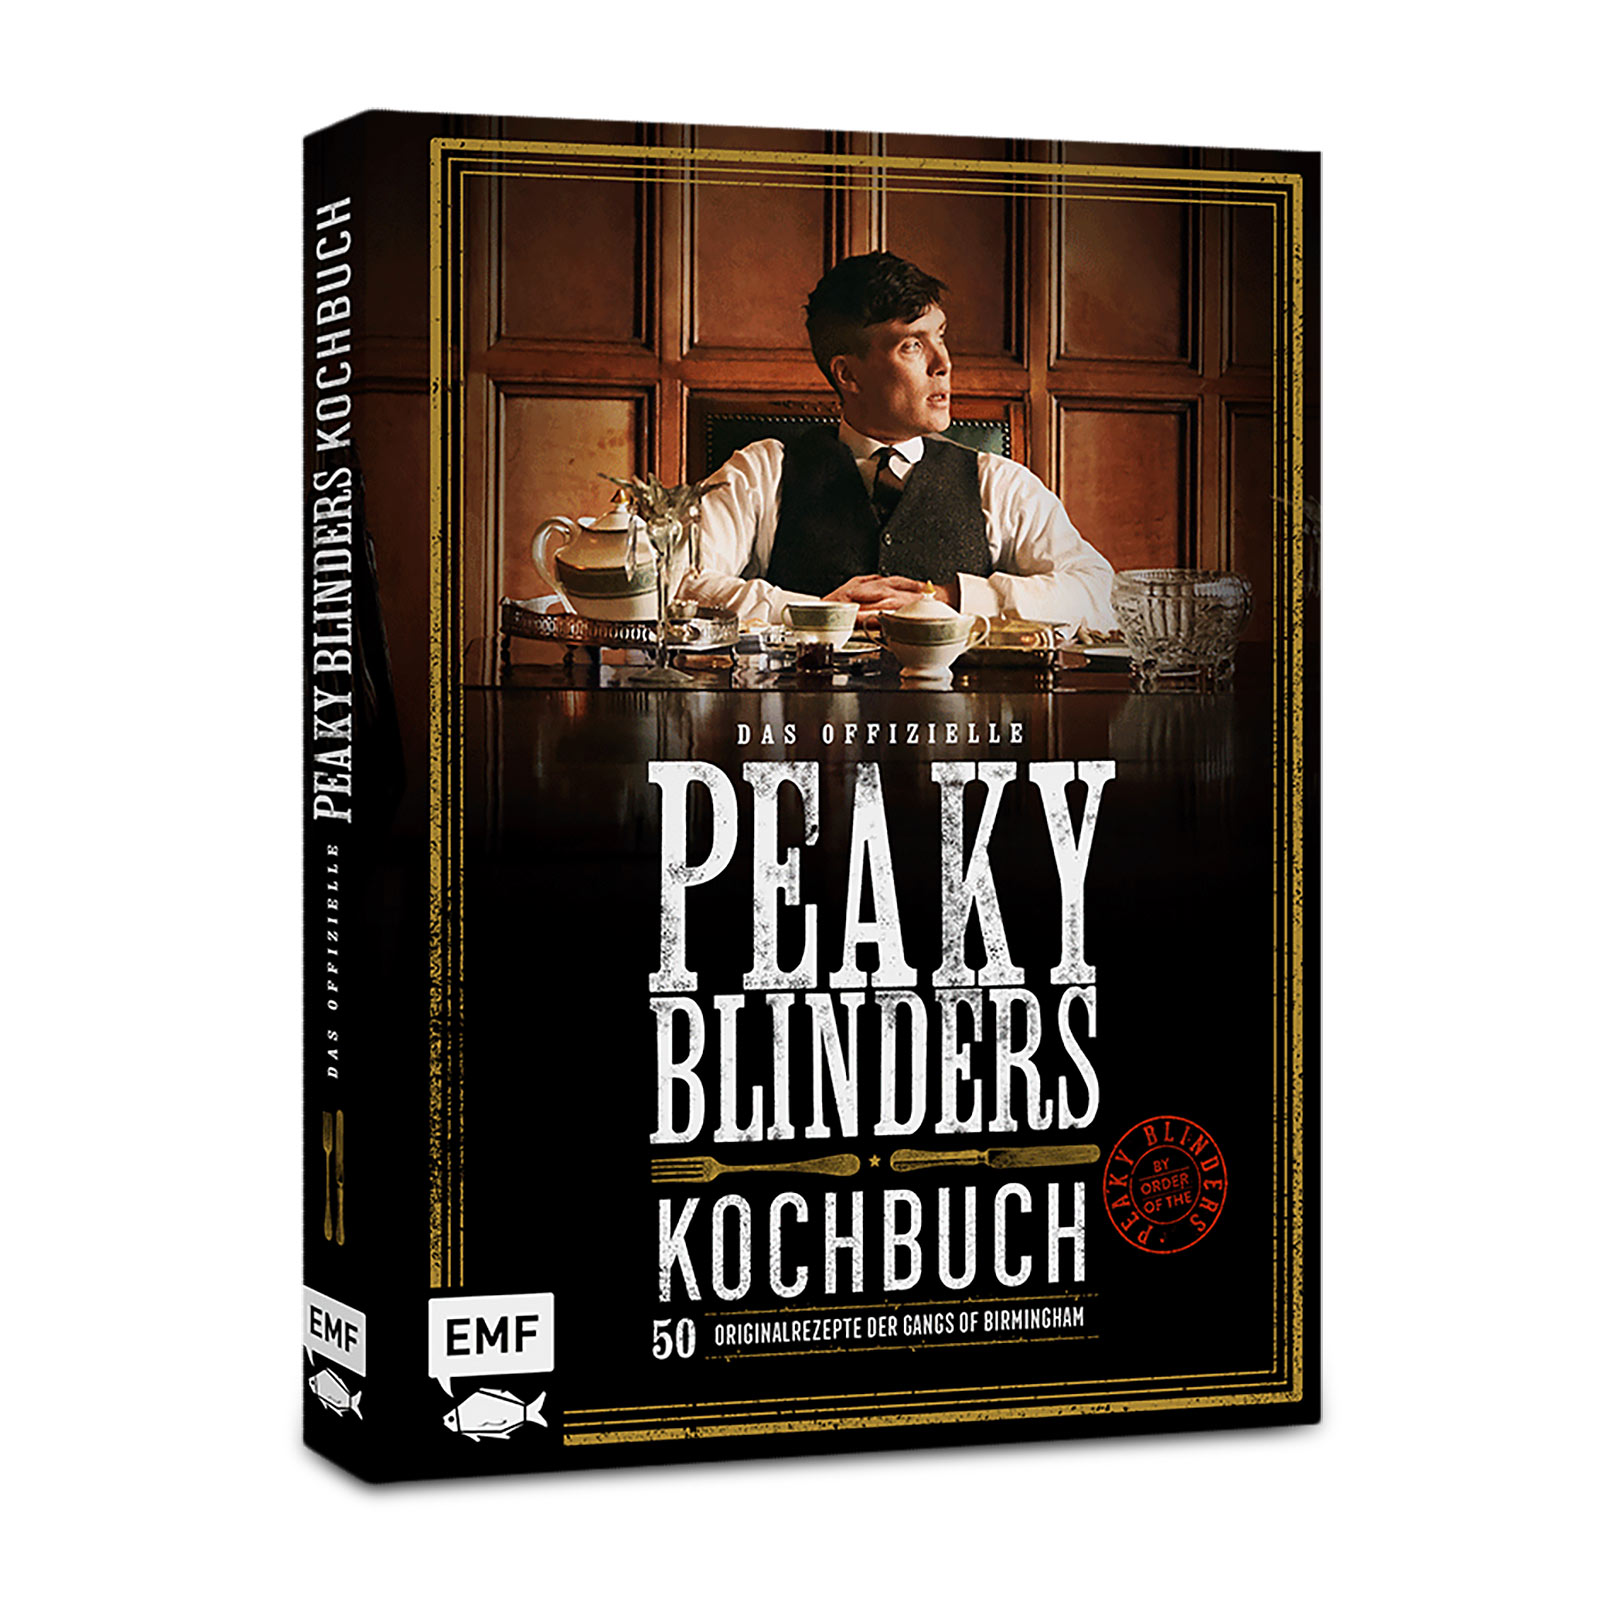 Le livre de cuisine officiel Peaky Blinders